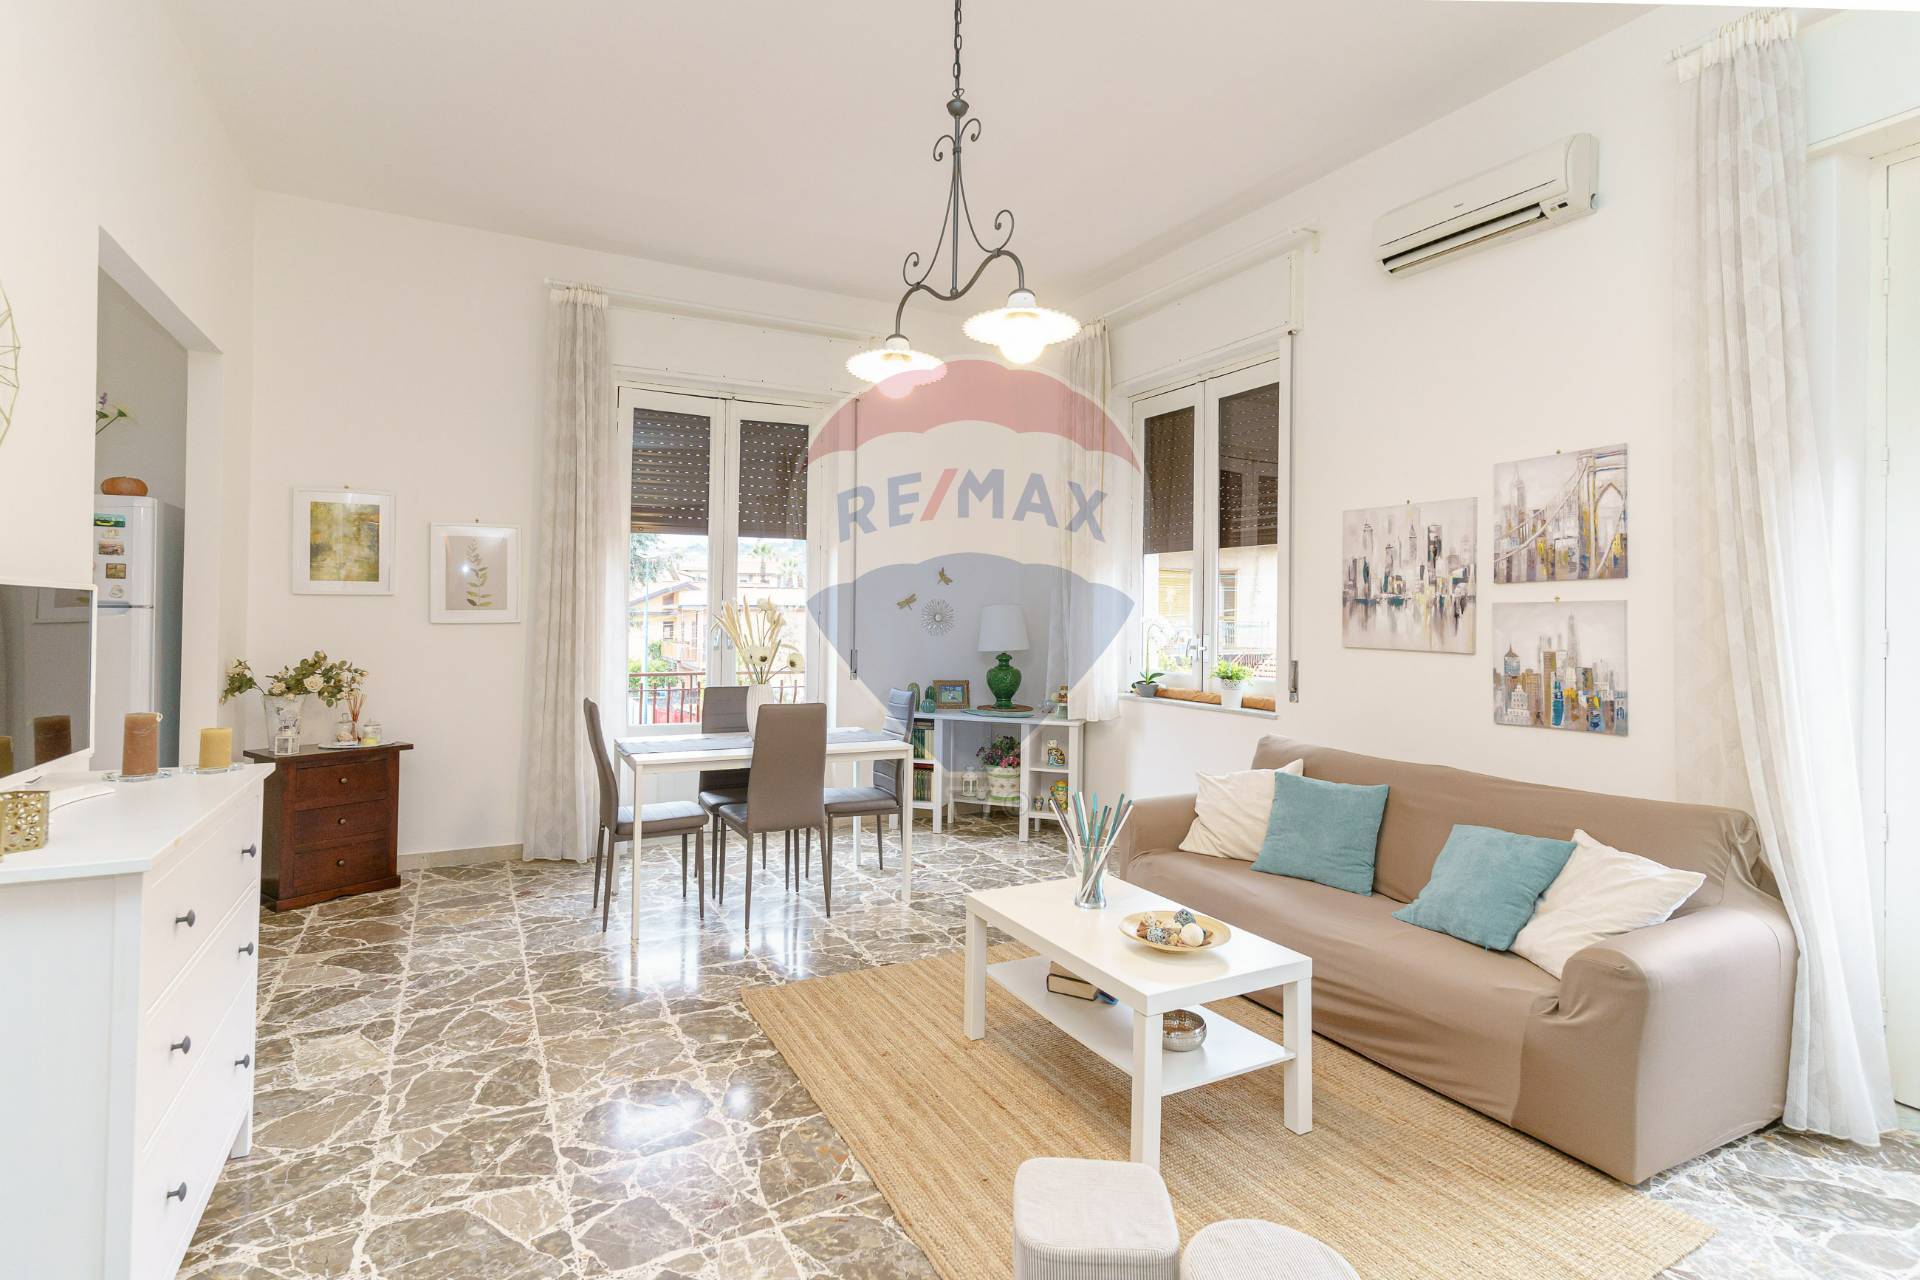 Appartamento in vendita a Pedara, 4 locali, prezzo € 120.000 | CambioCasa.it